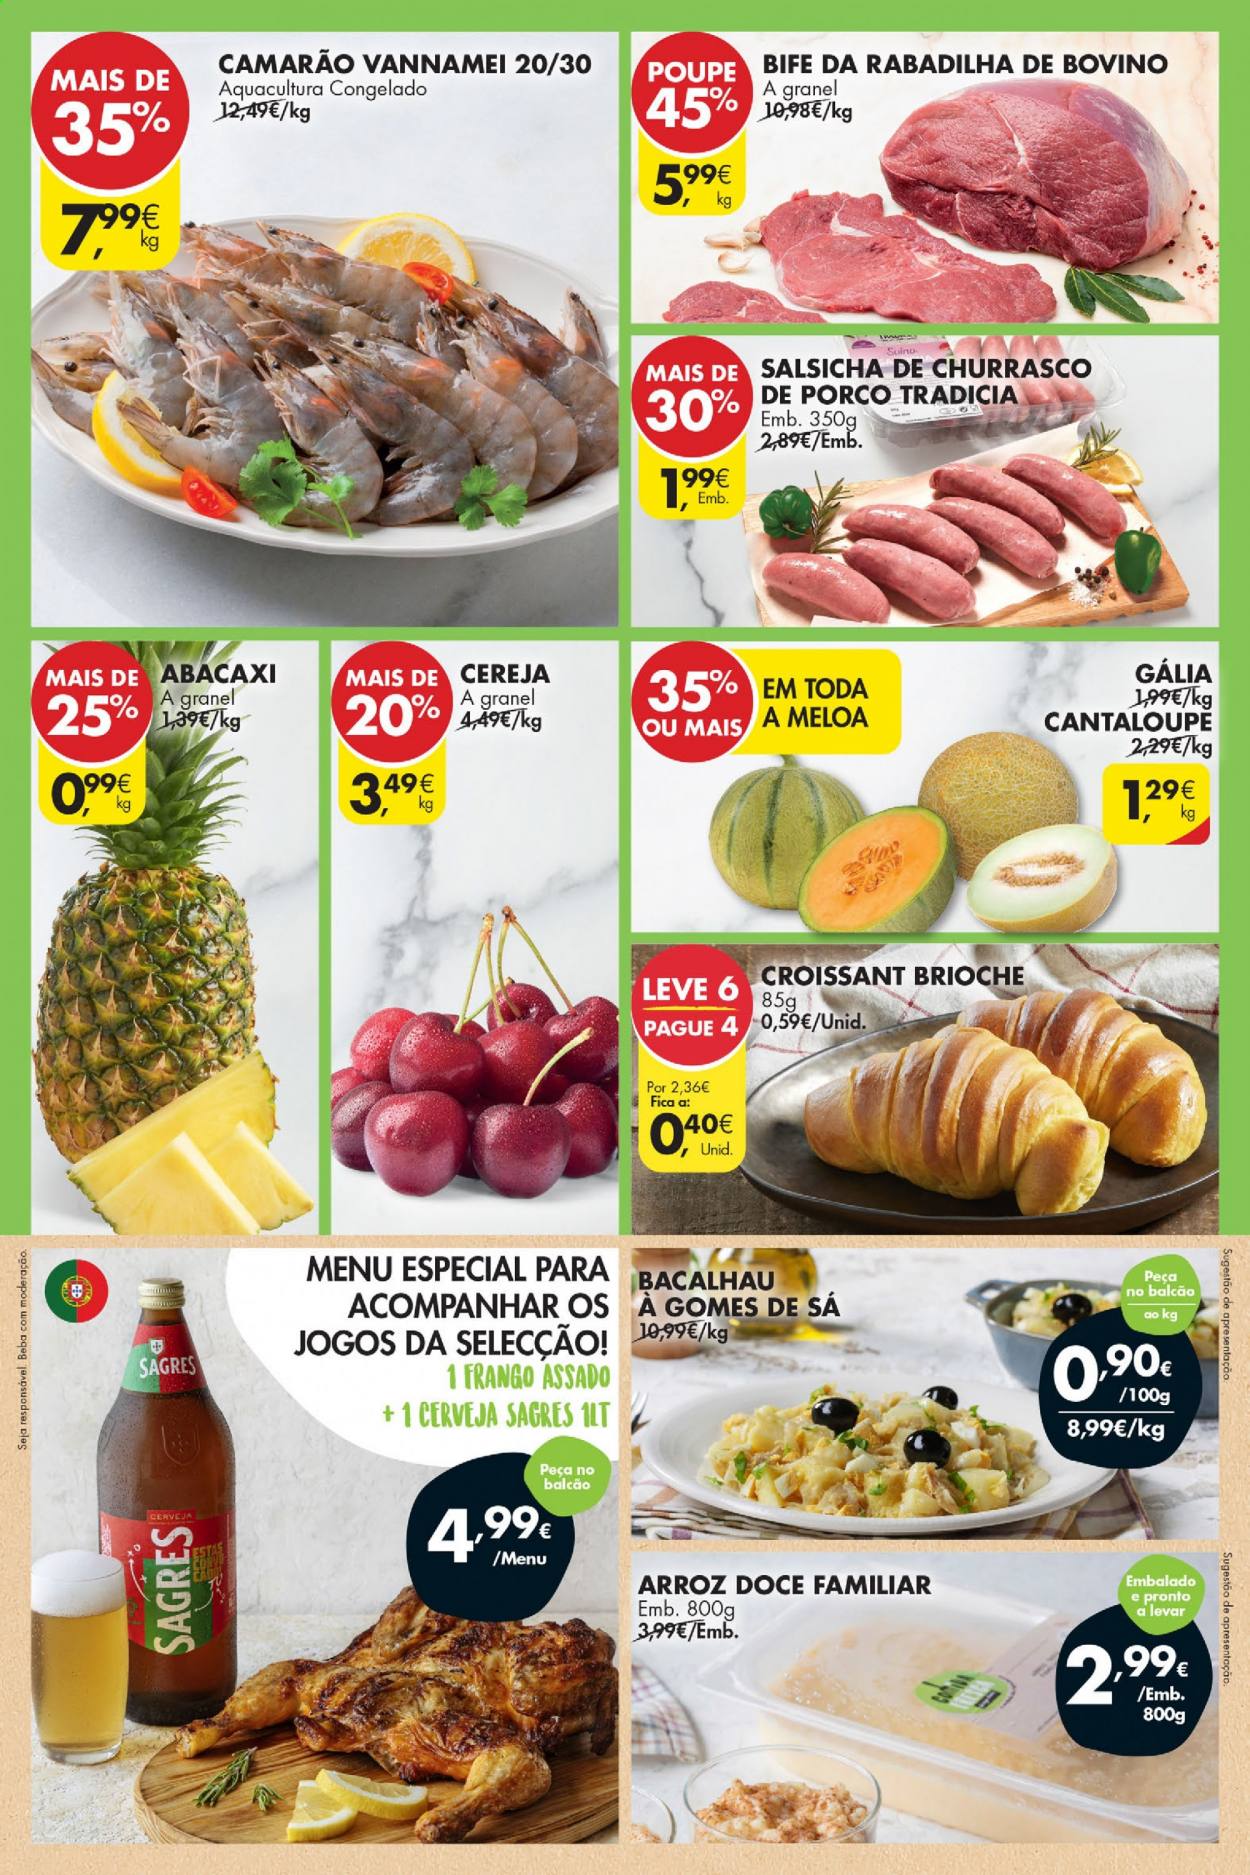 thumbnail - Folheto Pingo Doce - 25.6.2021 - 28.6.2021 - Produtos em promoção - Sagres, bife, brioche, croissant, camarão, bacalhau, salsicha, arroz. Página 2.